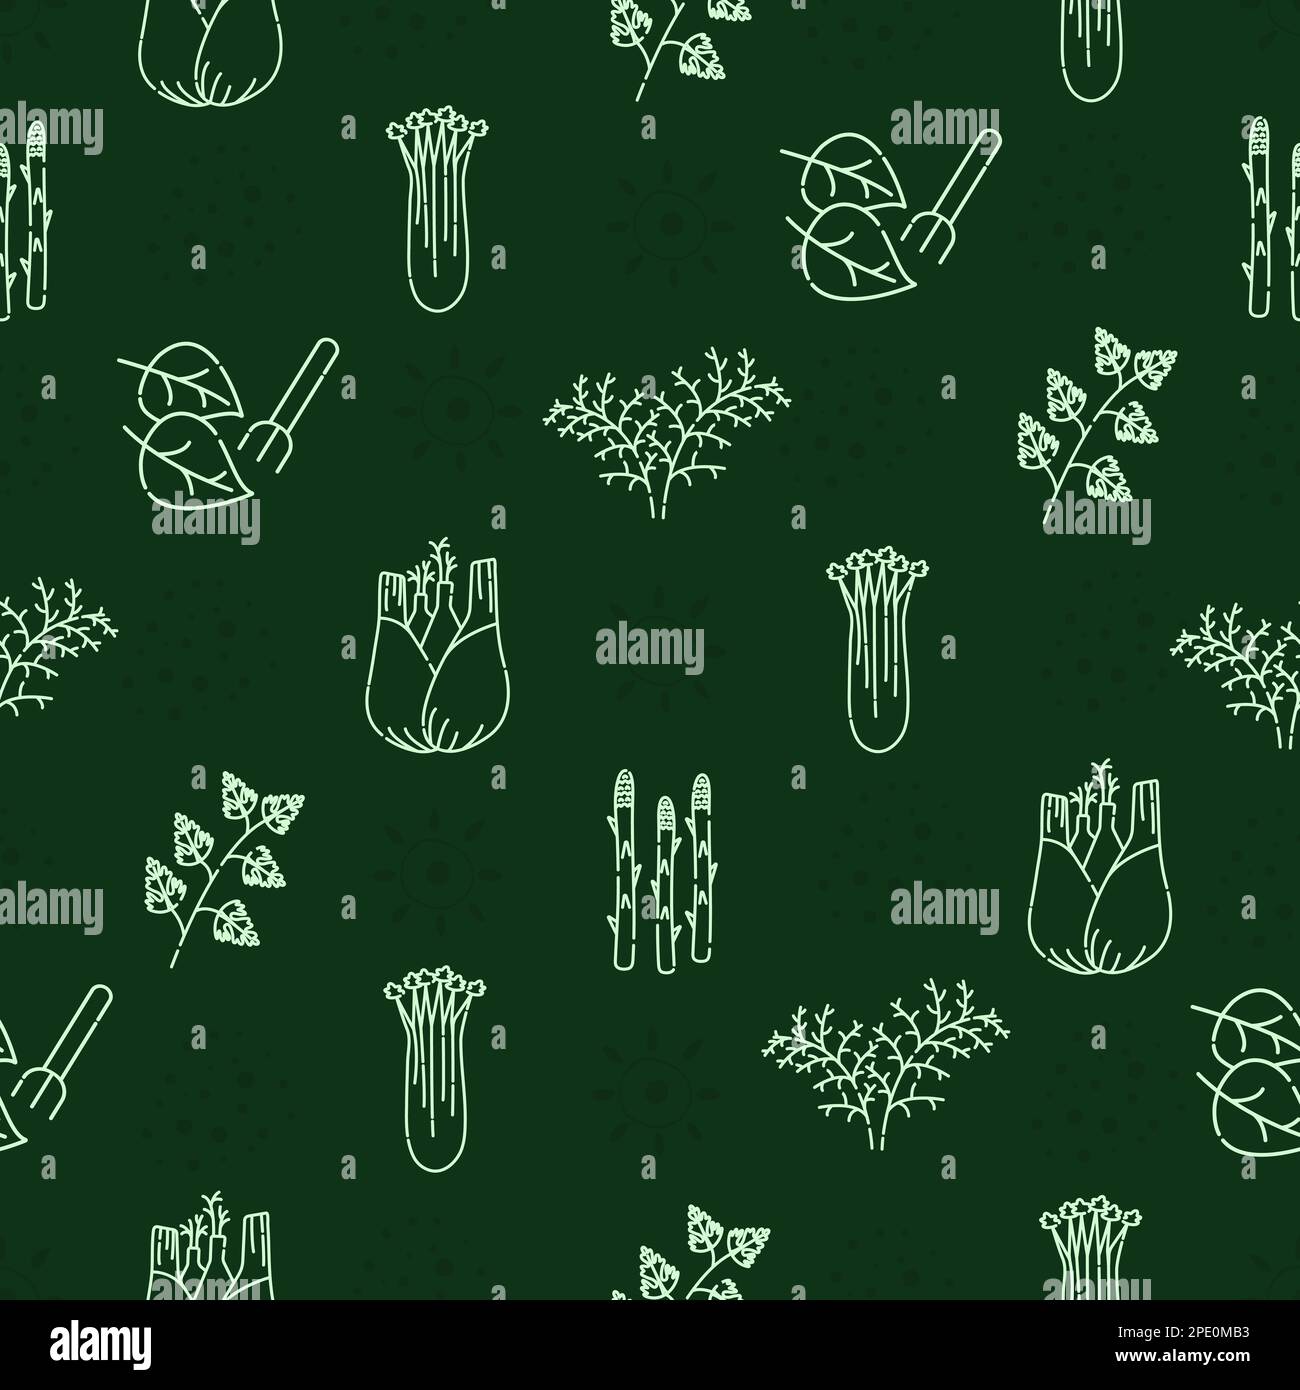 Grünpflanzen und Kräuter, grünes einfarbiges, nahtloses Muster Stock Vektor